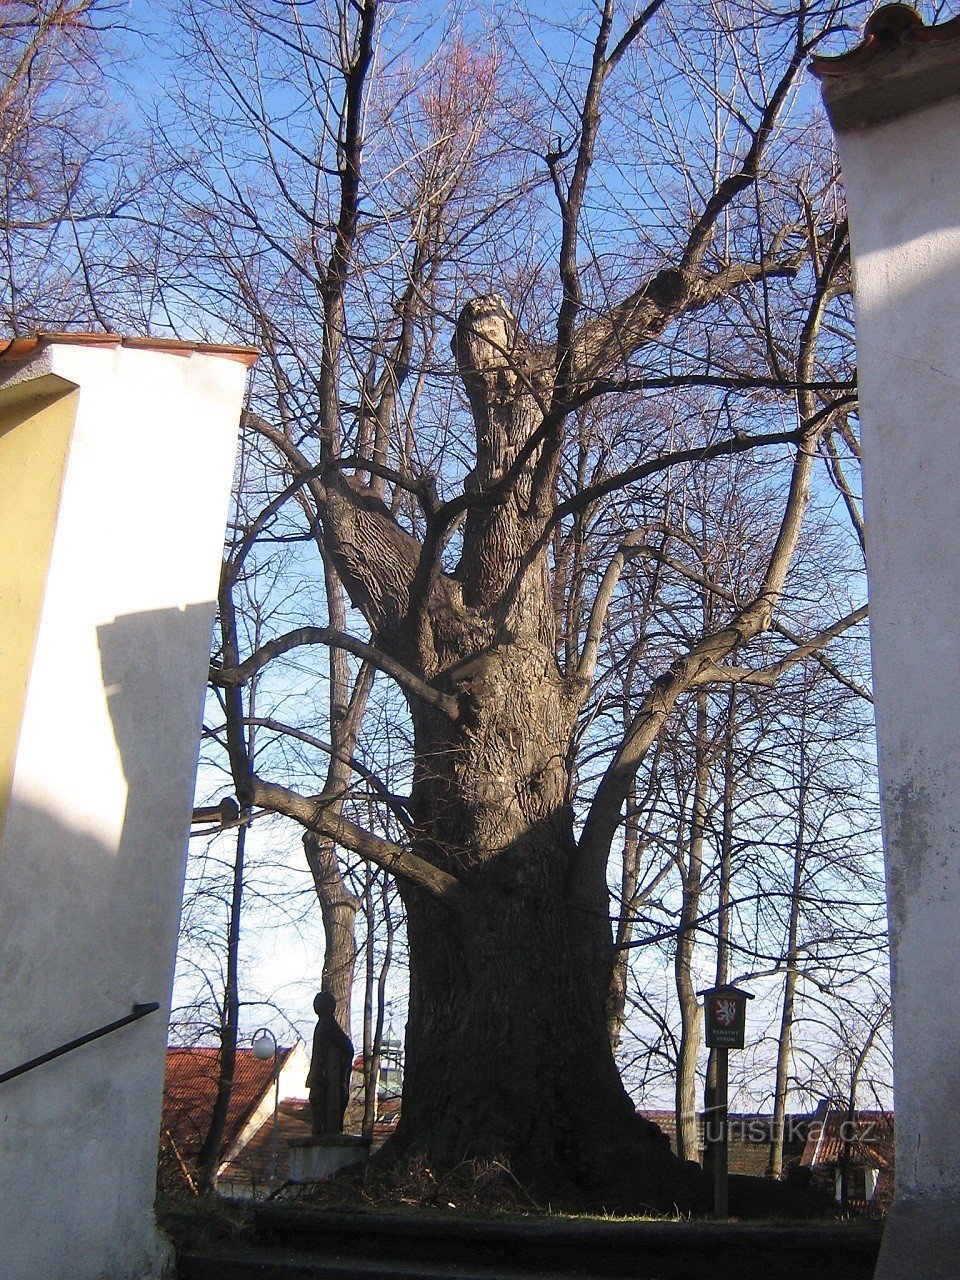 Η φλαμουριά του Γκουρρέ - δέντρο της χρονιάς 2008